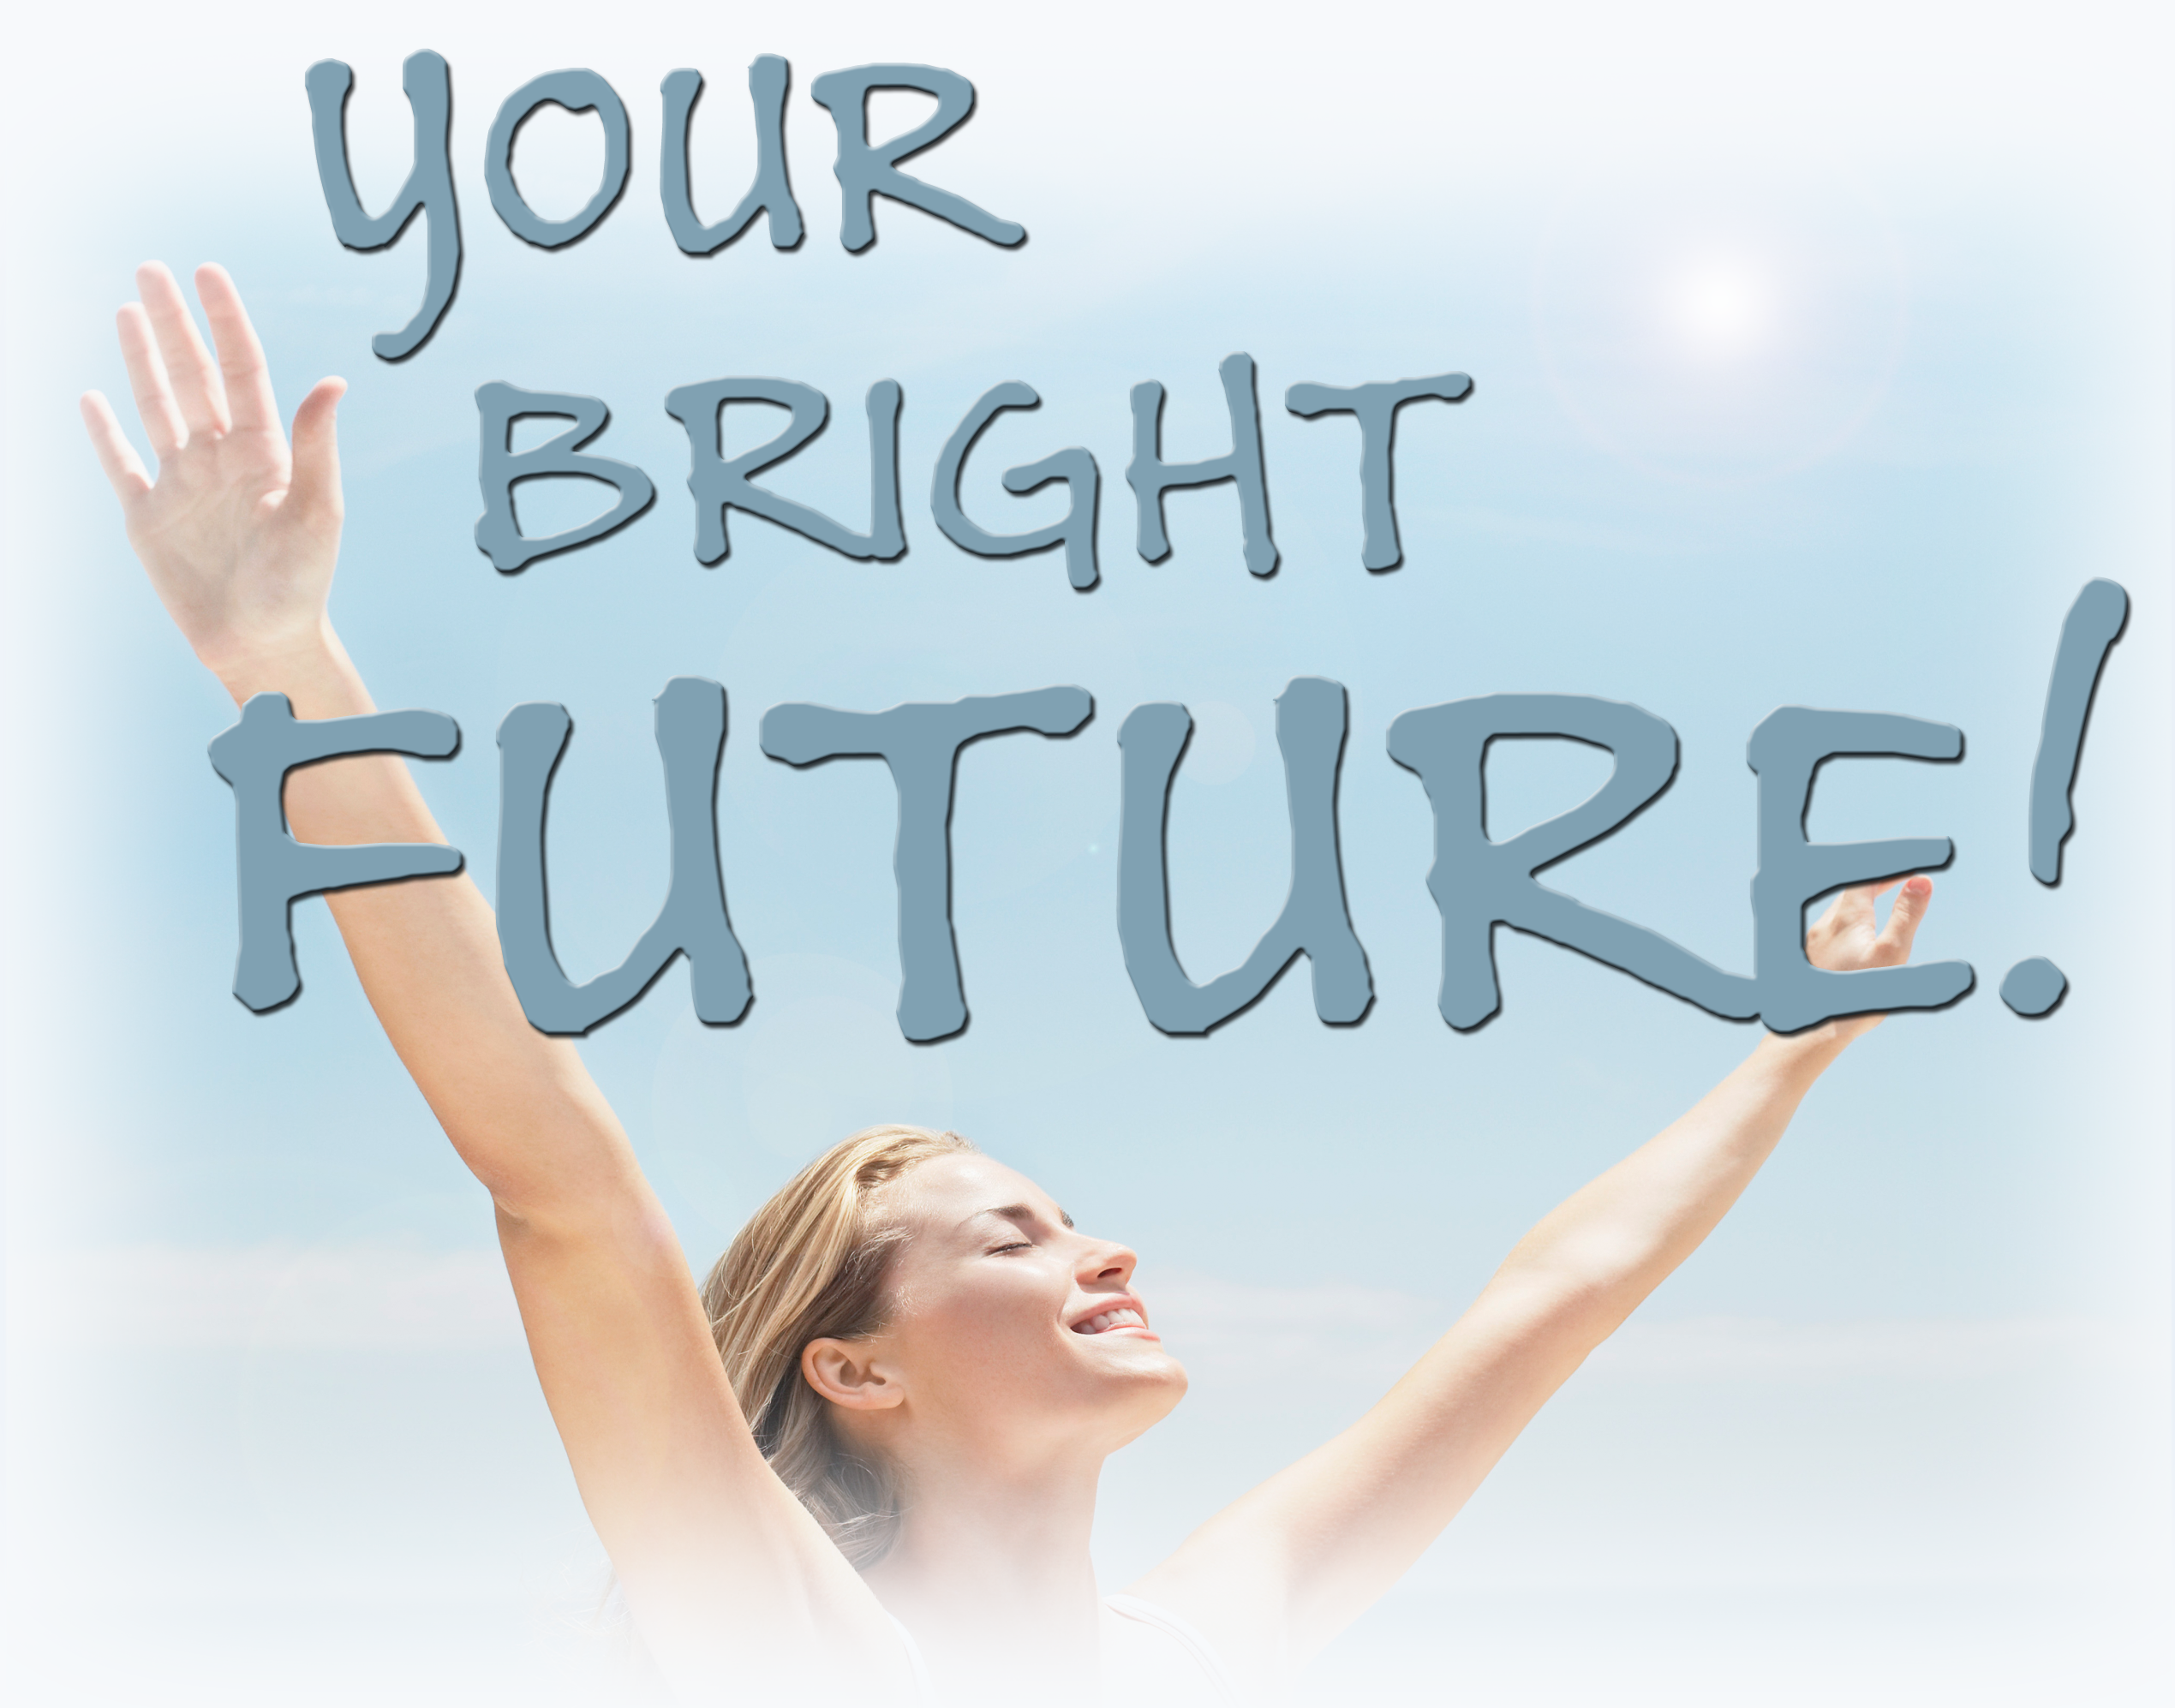 Your Bright Future